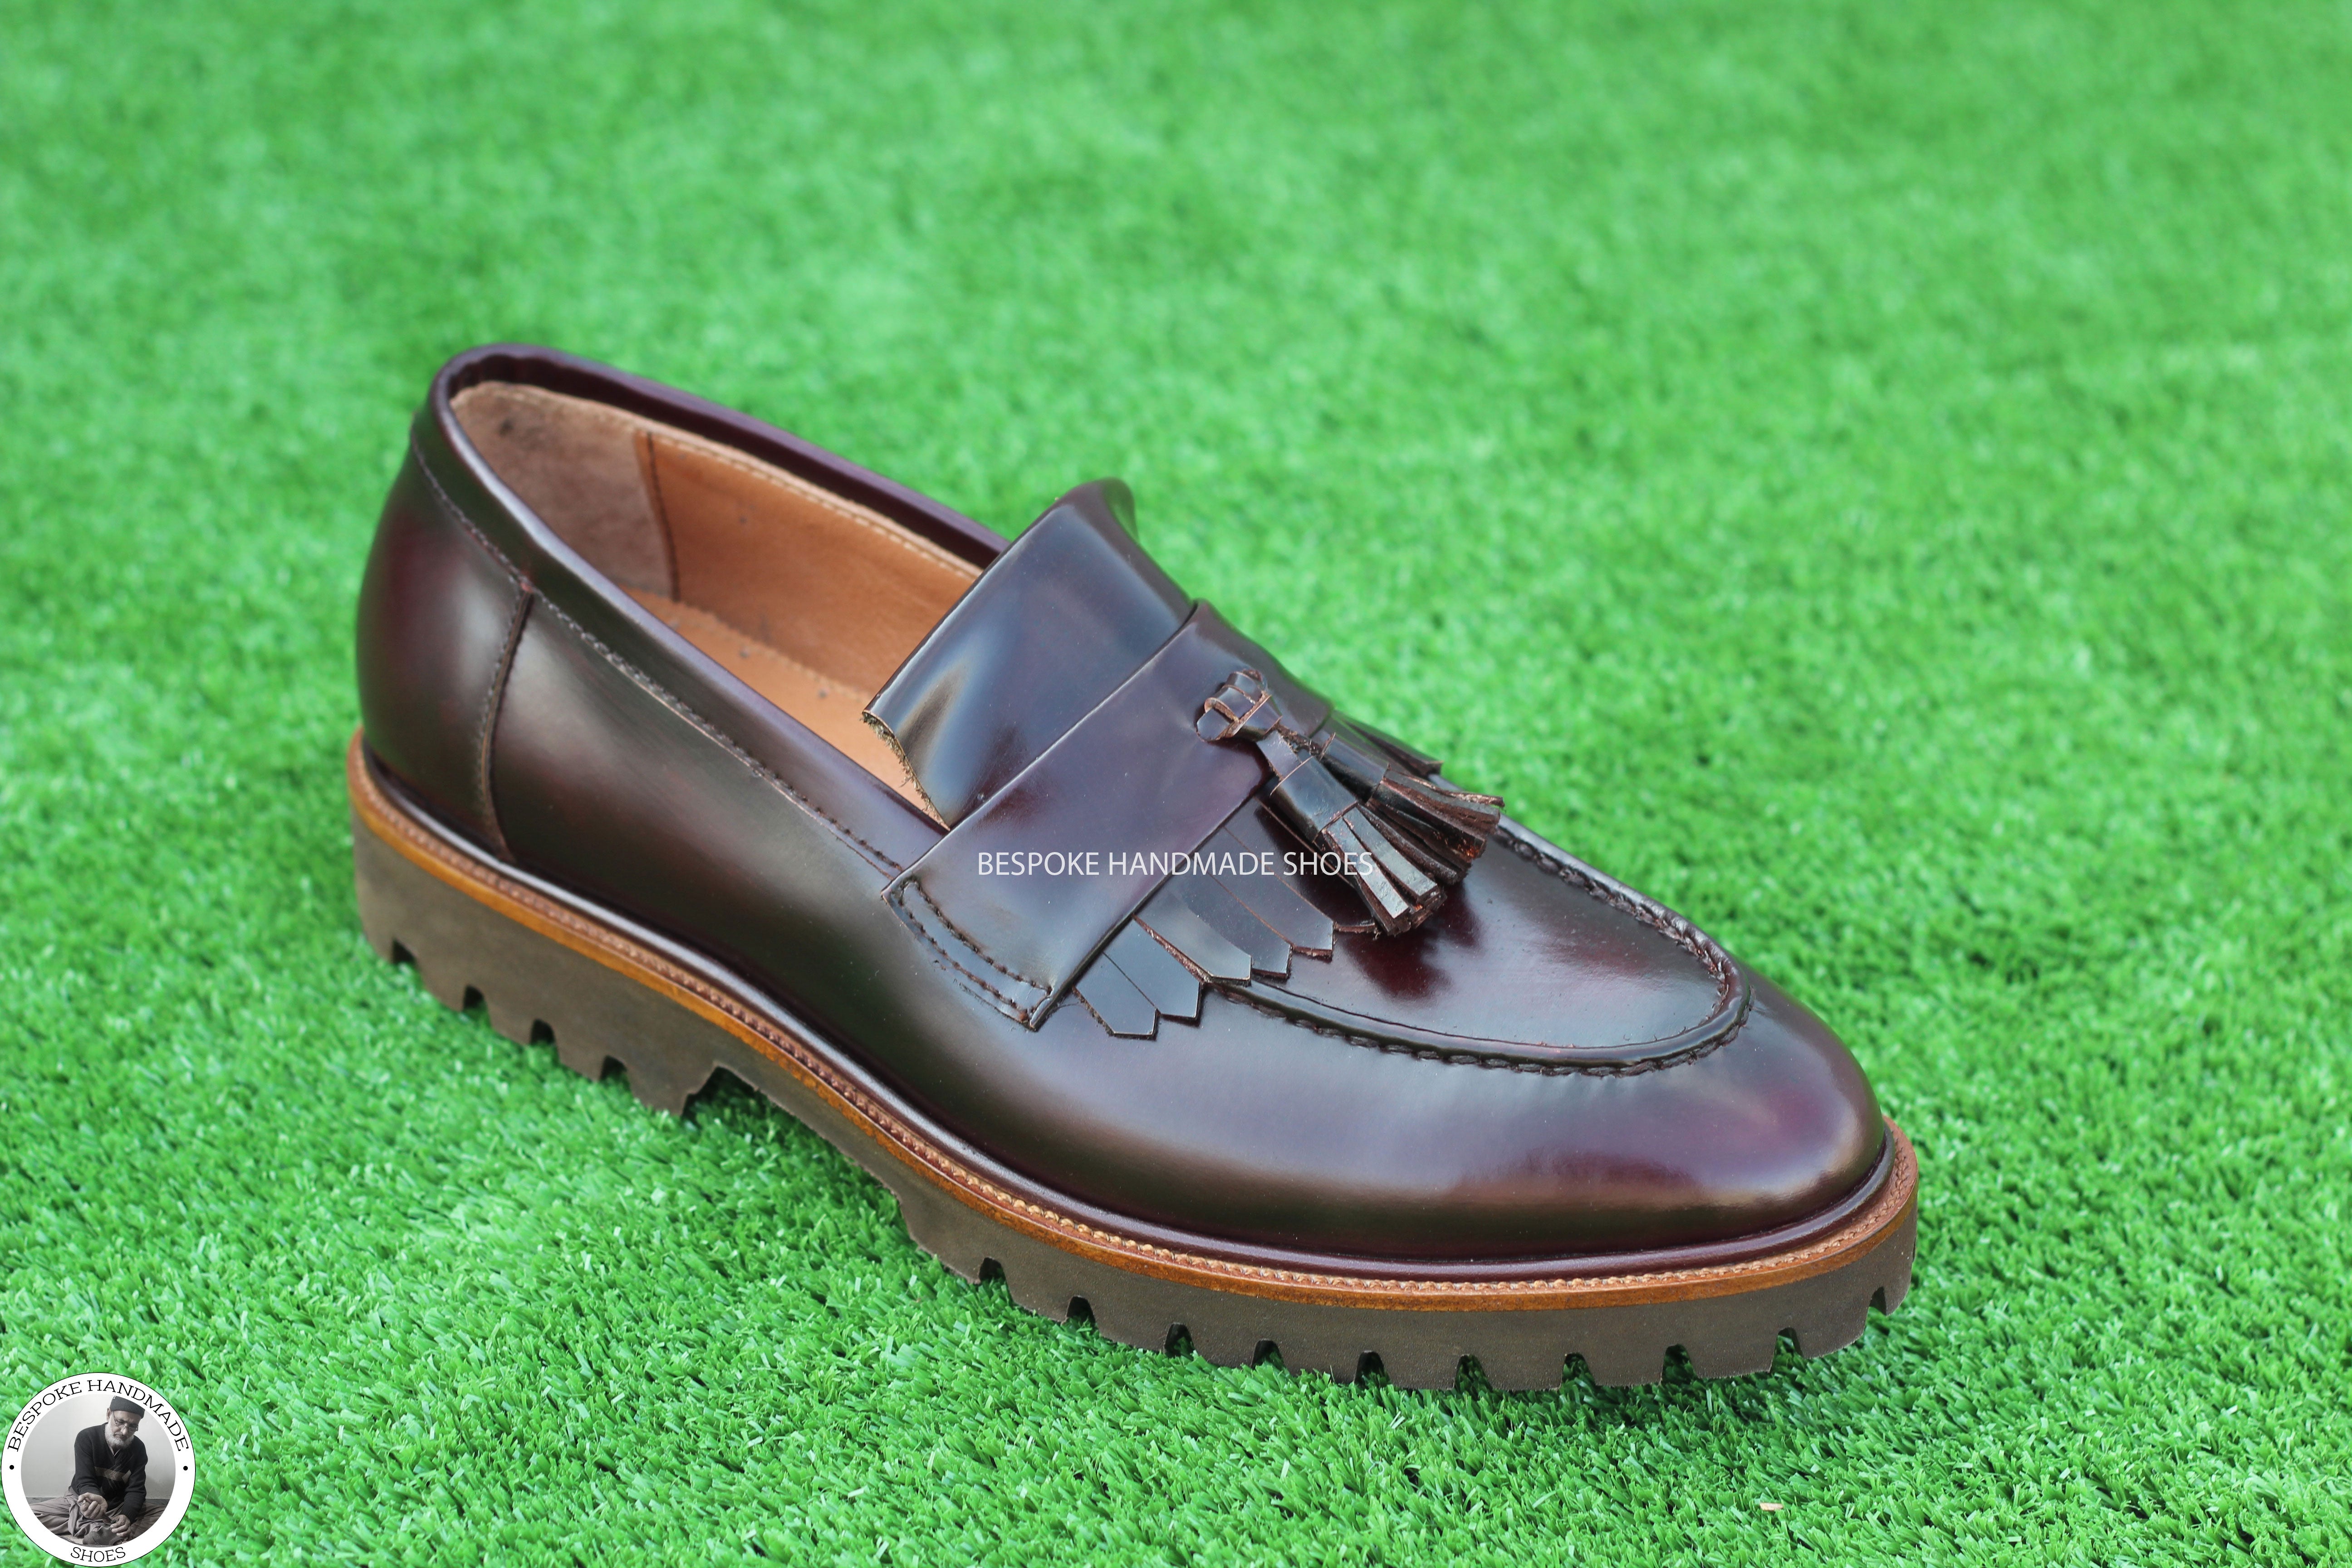 Handmade Dress Shoe, Brown Leather Loafer Slip on Leather Tassels Fringes Men Shoes